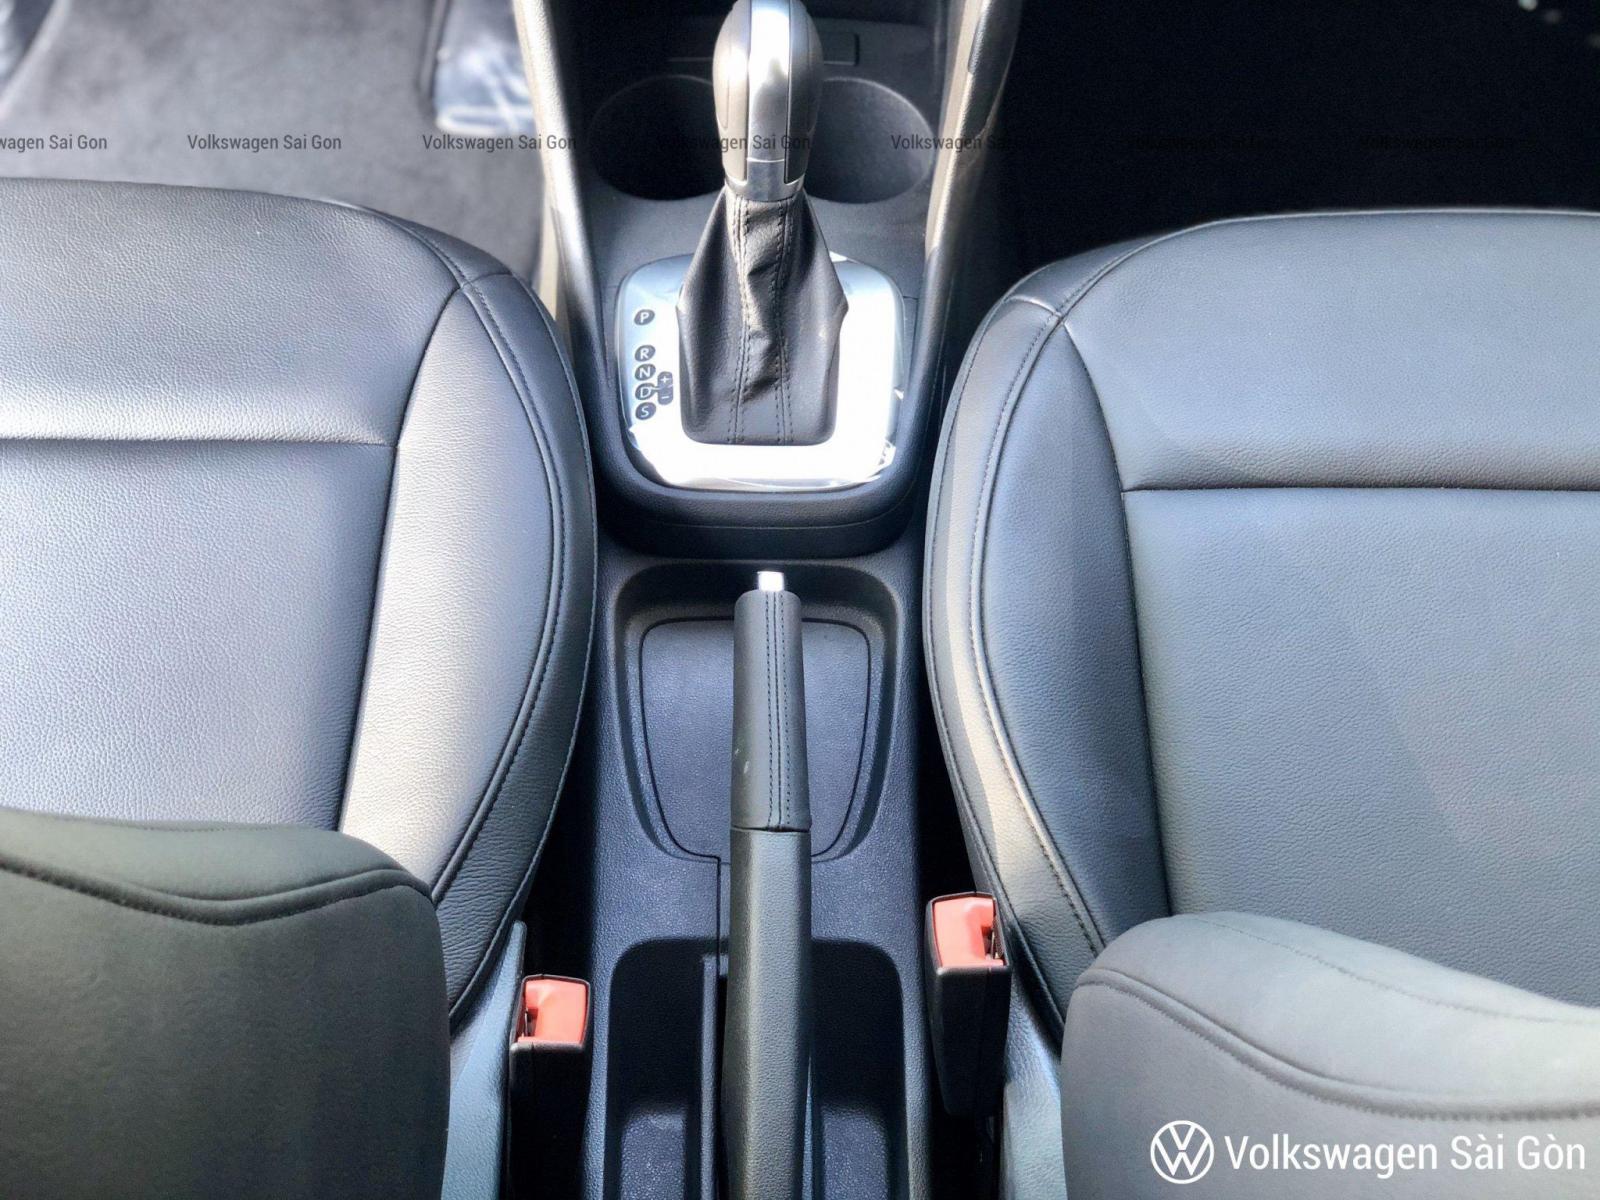 Polo Hatchback 2020 nhập khẩu giá chỉ 695 triệu, nhỏ gọn trang bị nhiều công nghệ giá không đổi, Lh 0938238469-5